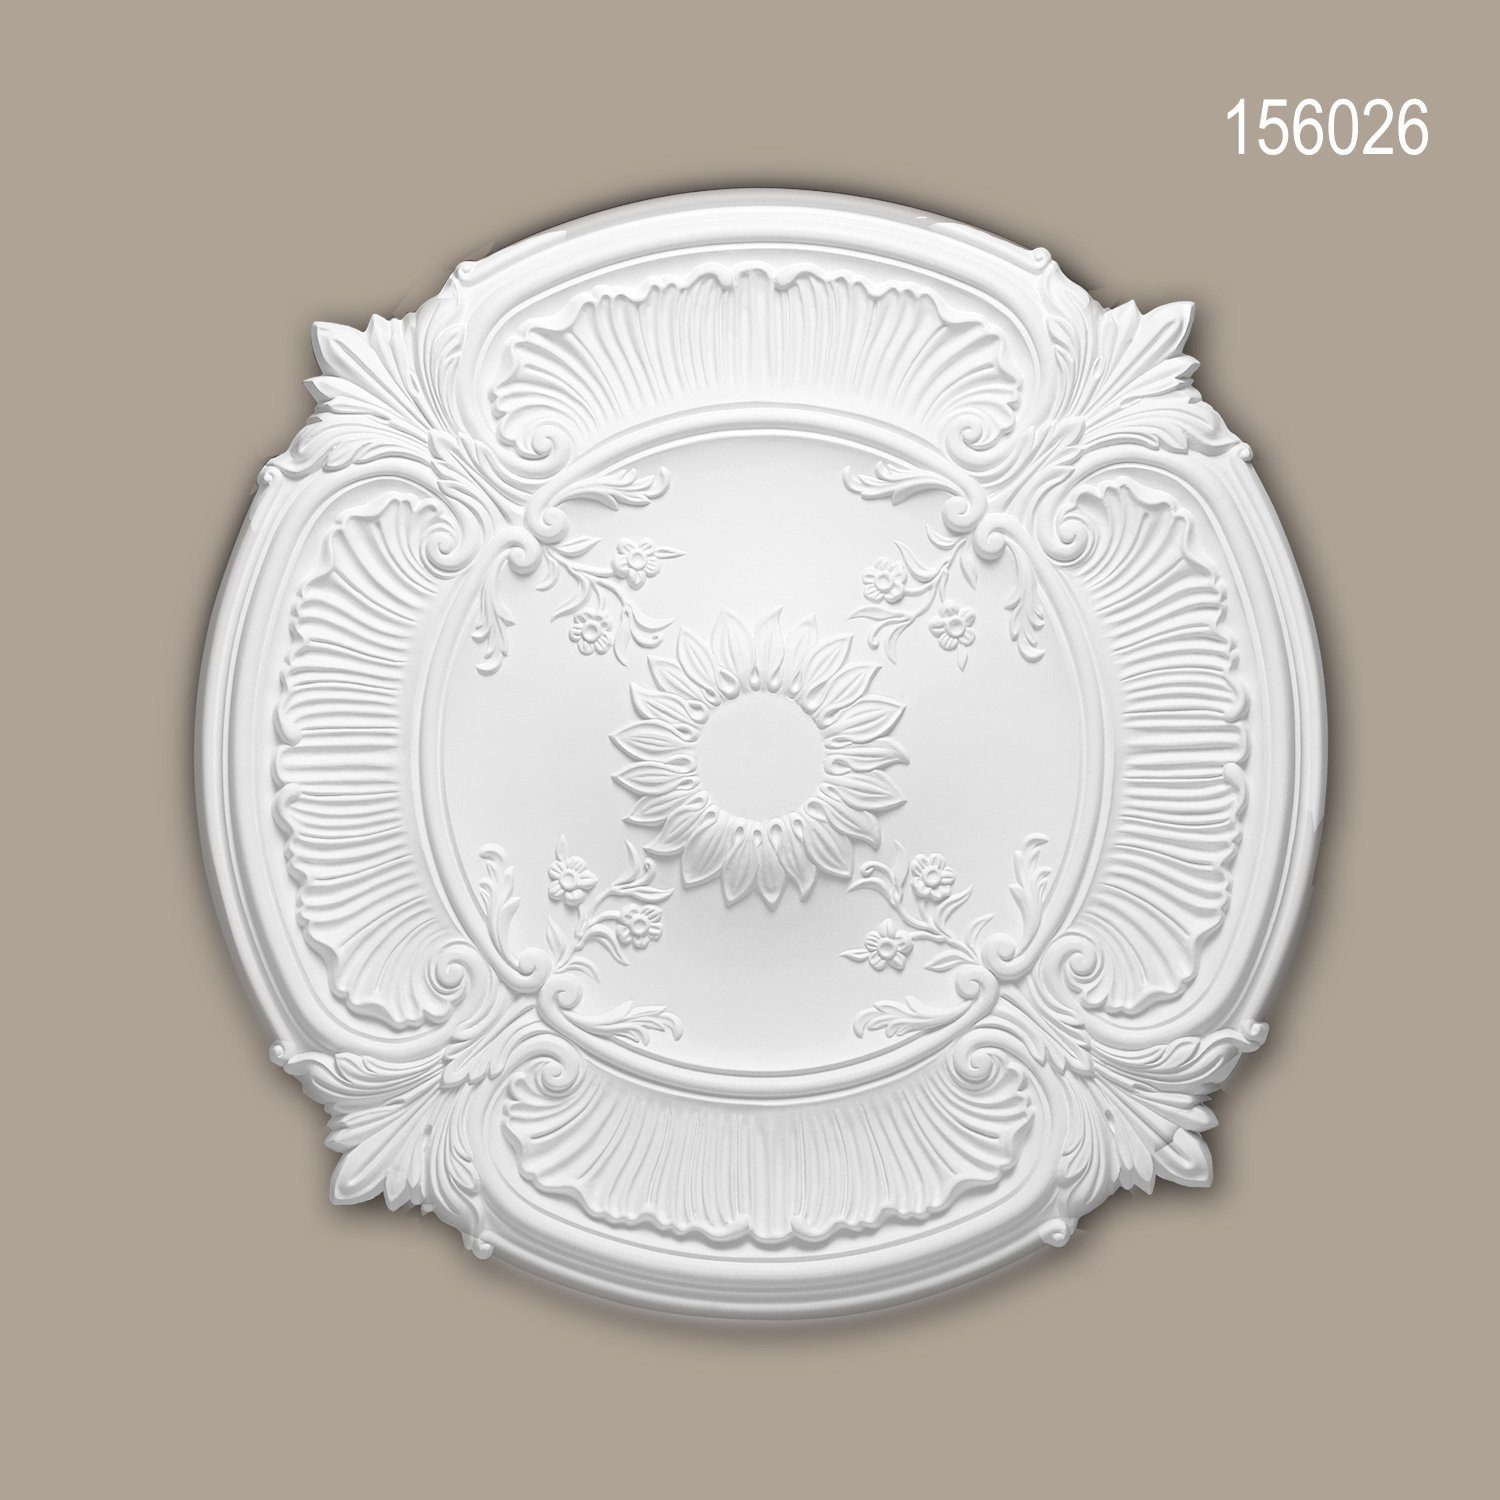 1 Medallion, Stuckrosette, Zierelement, Decken-Rosette Neo-Renaissance 156026 vorgrundiert, Deckenelement, cm), weiß, Profhome St., Deckenrosette, 77 Stil: (Rosette, Durchmesser